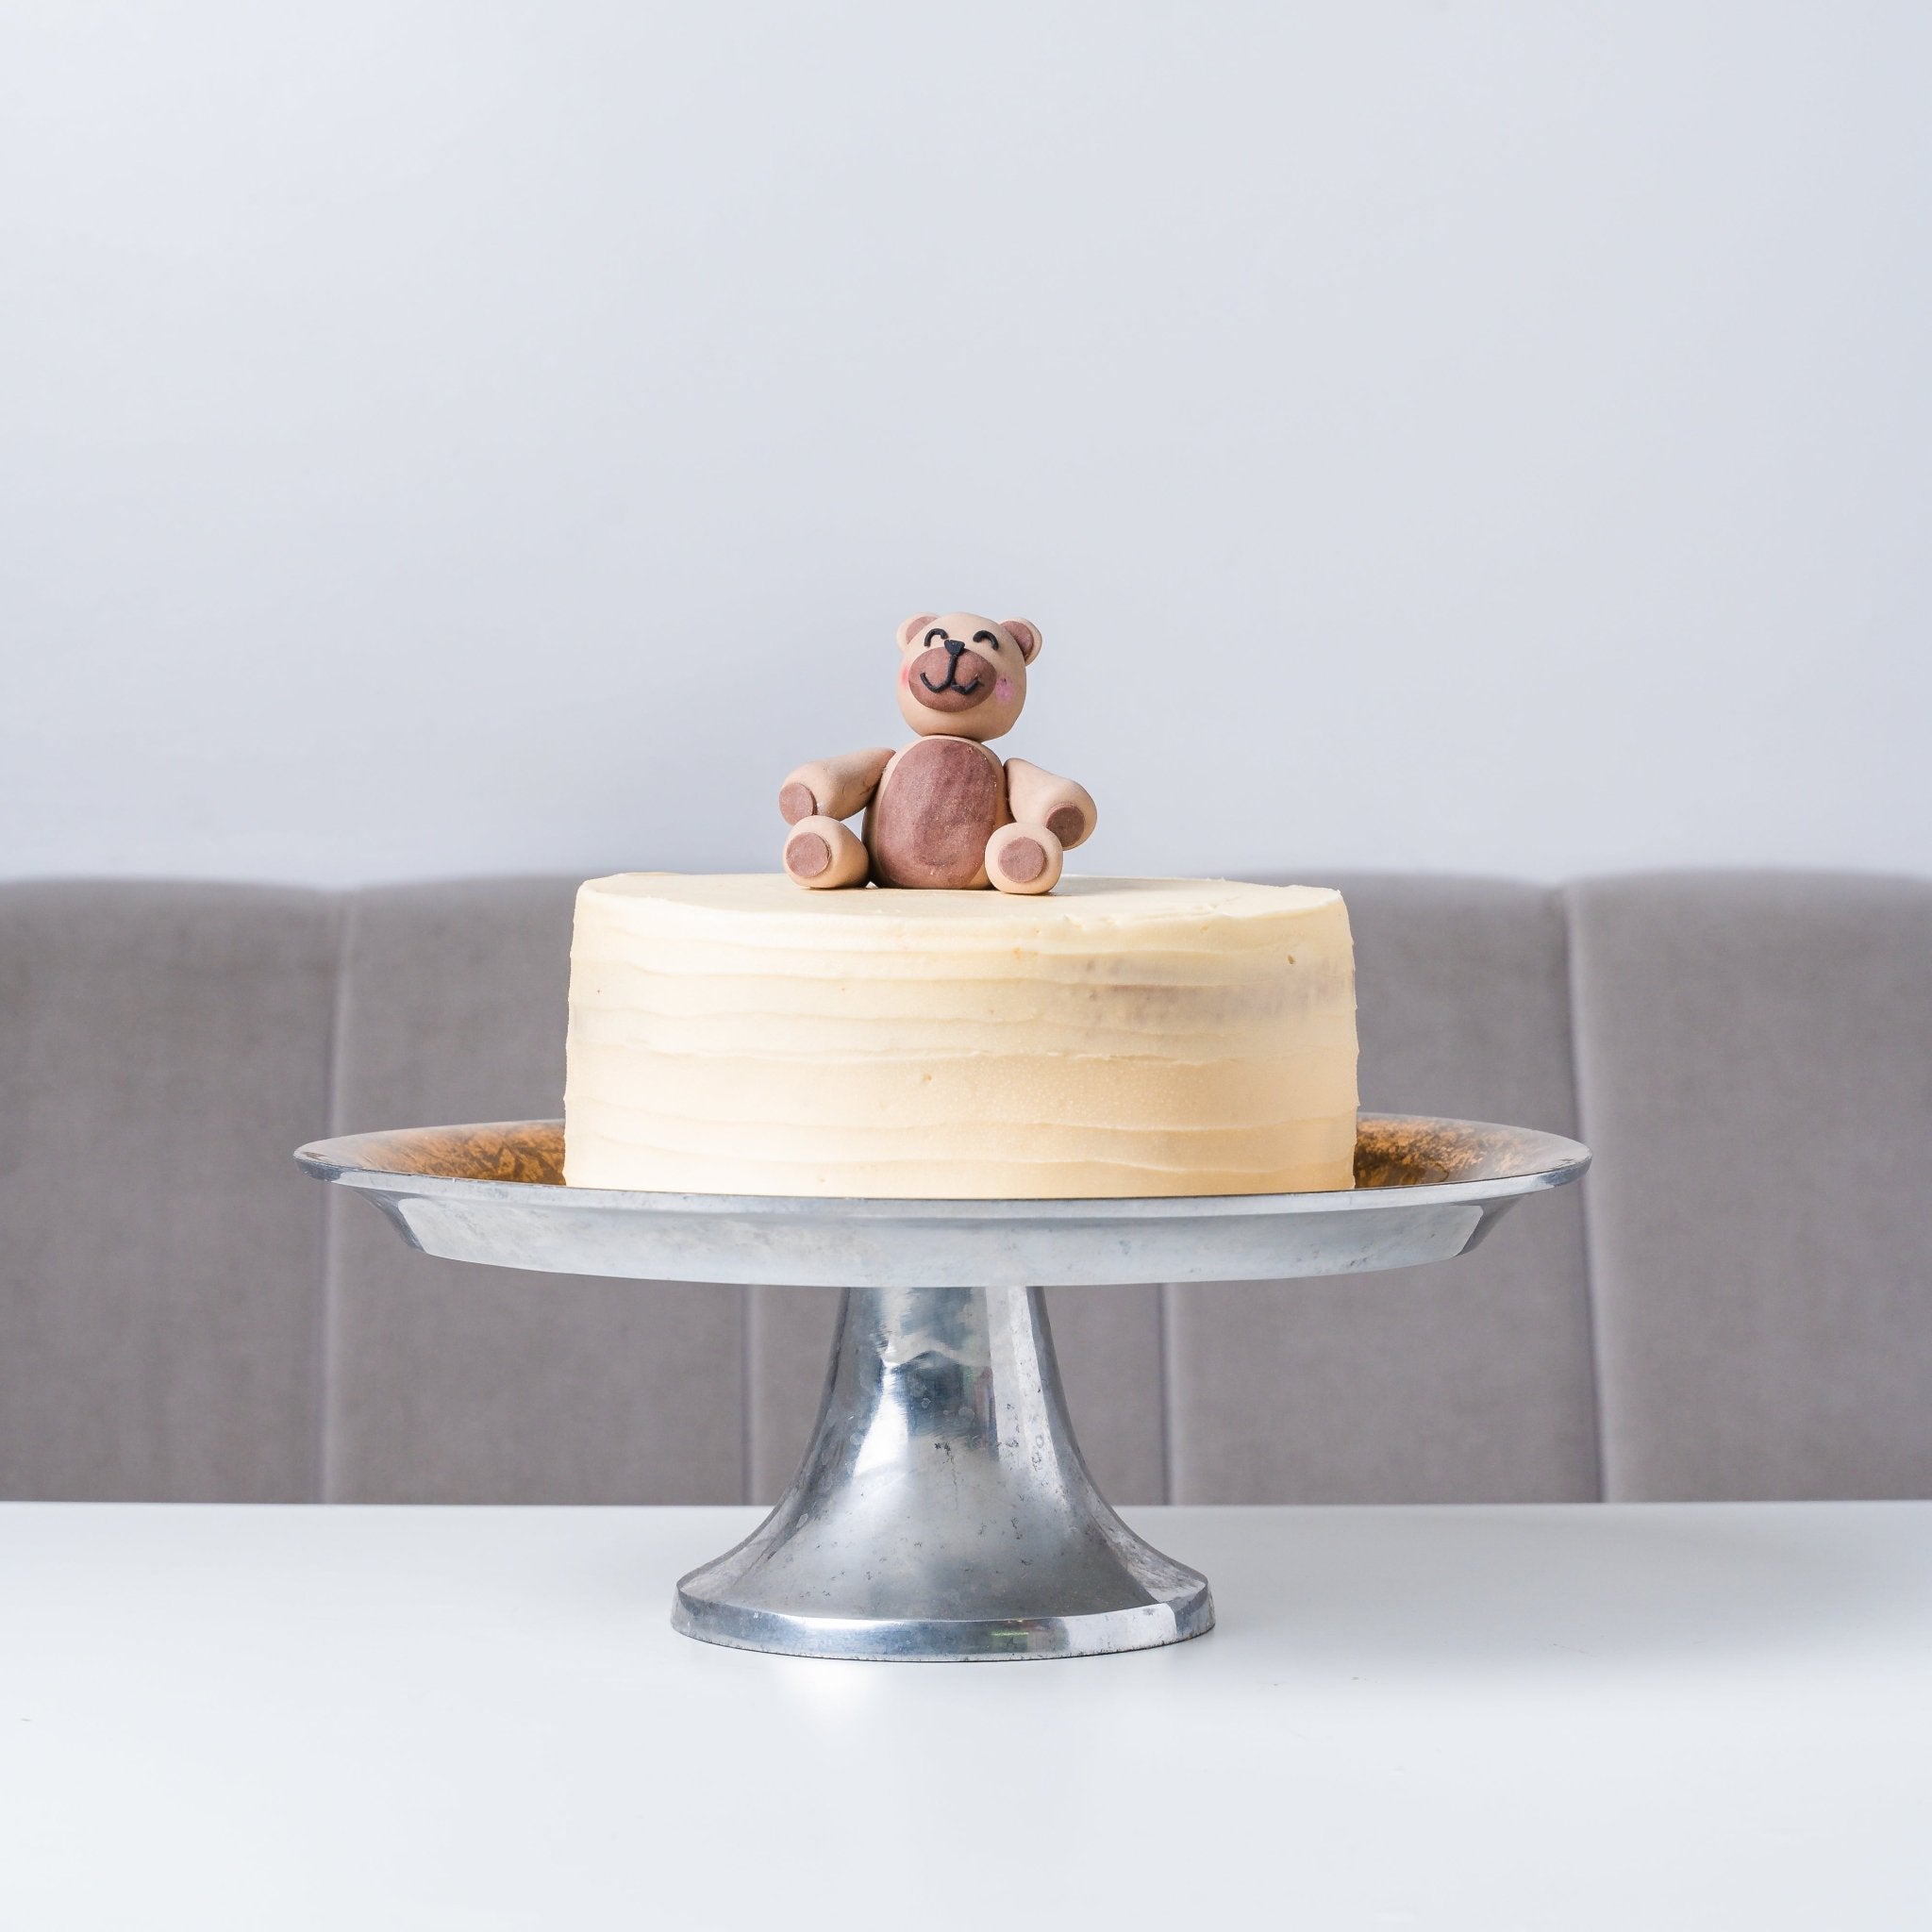 3D Animal Figure Cake - Bear - Jack and Beyond